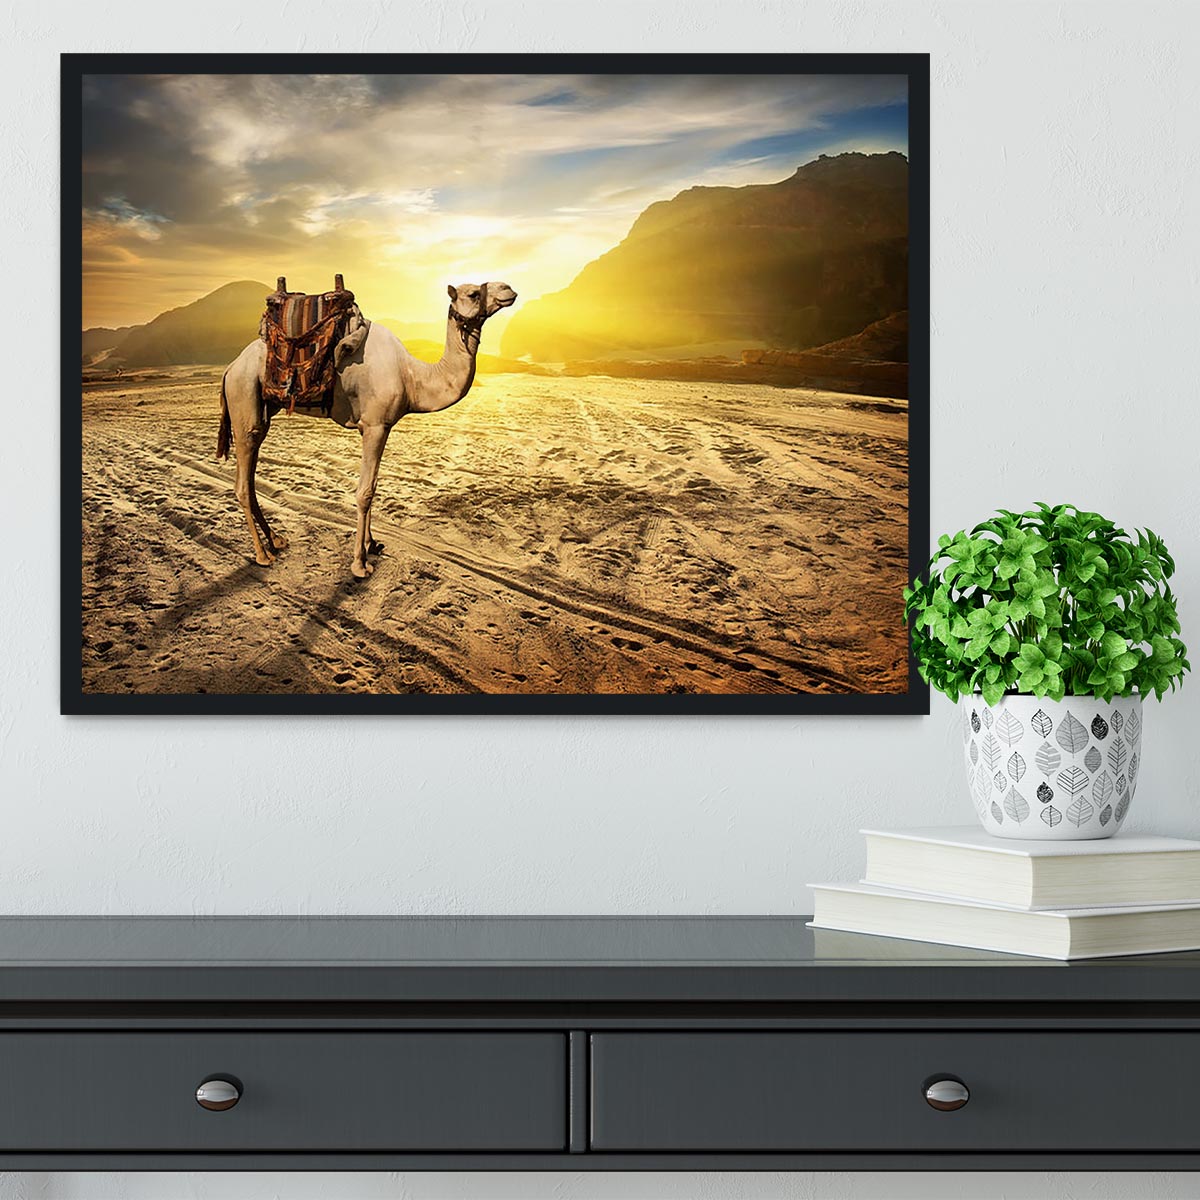 Camel in sandy desert near mountains at sunset Framed Print - Canvas Art Rocks - 2